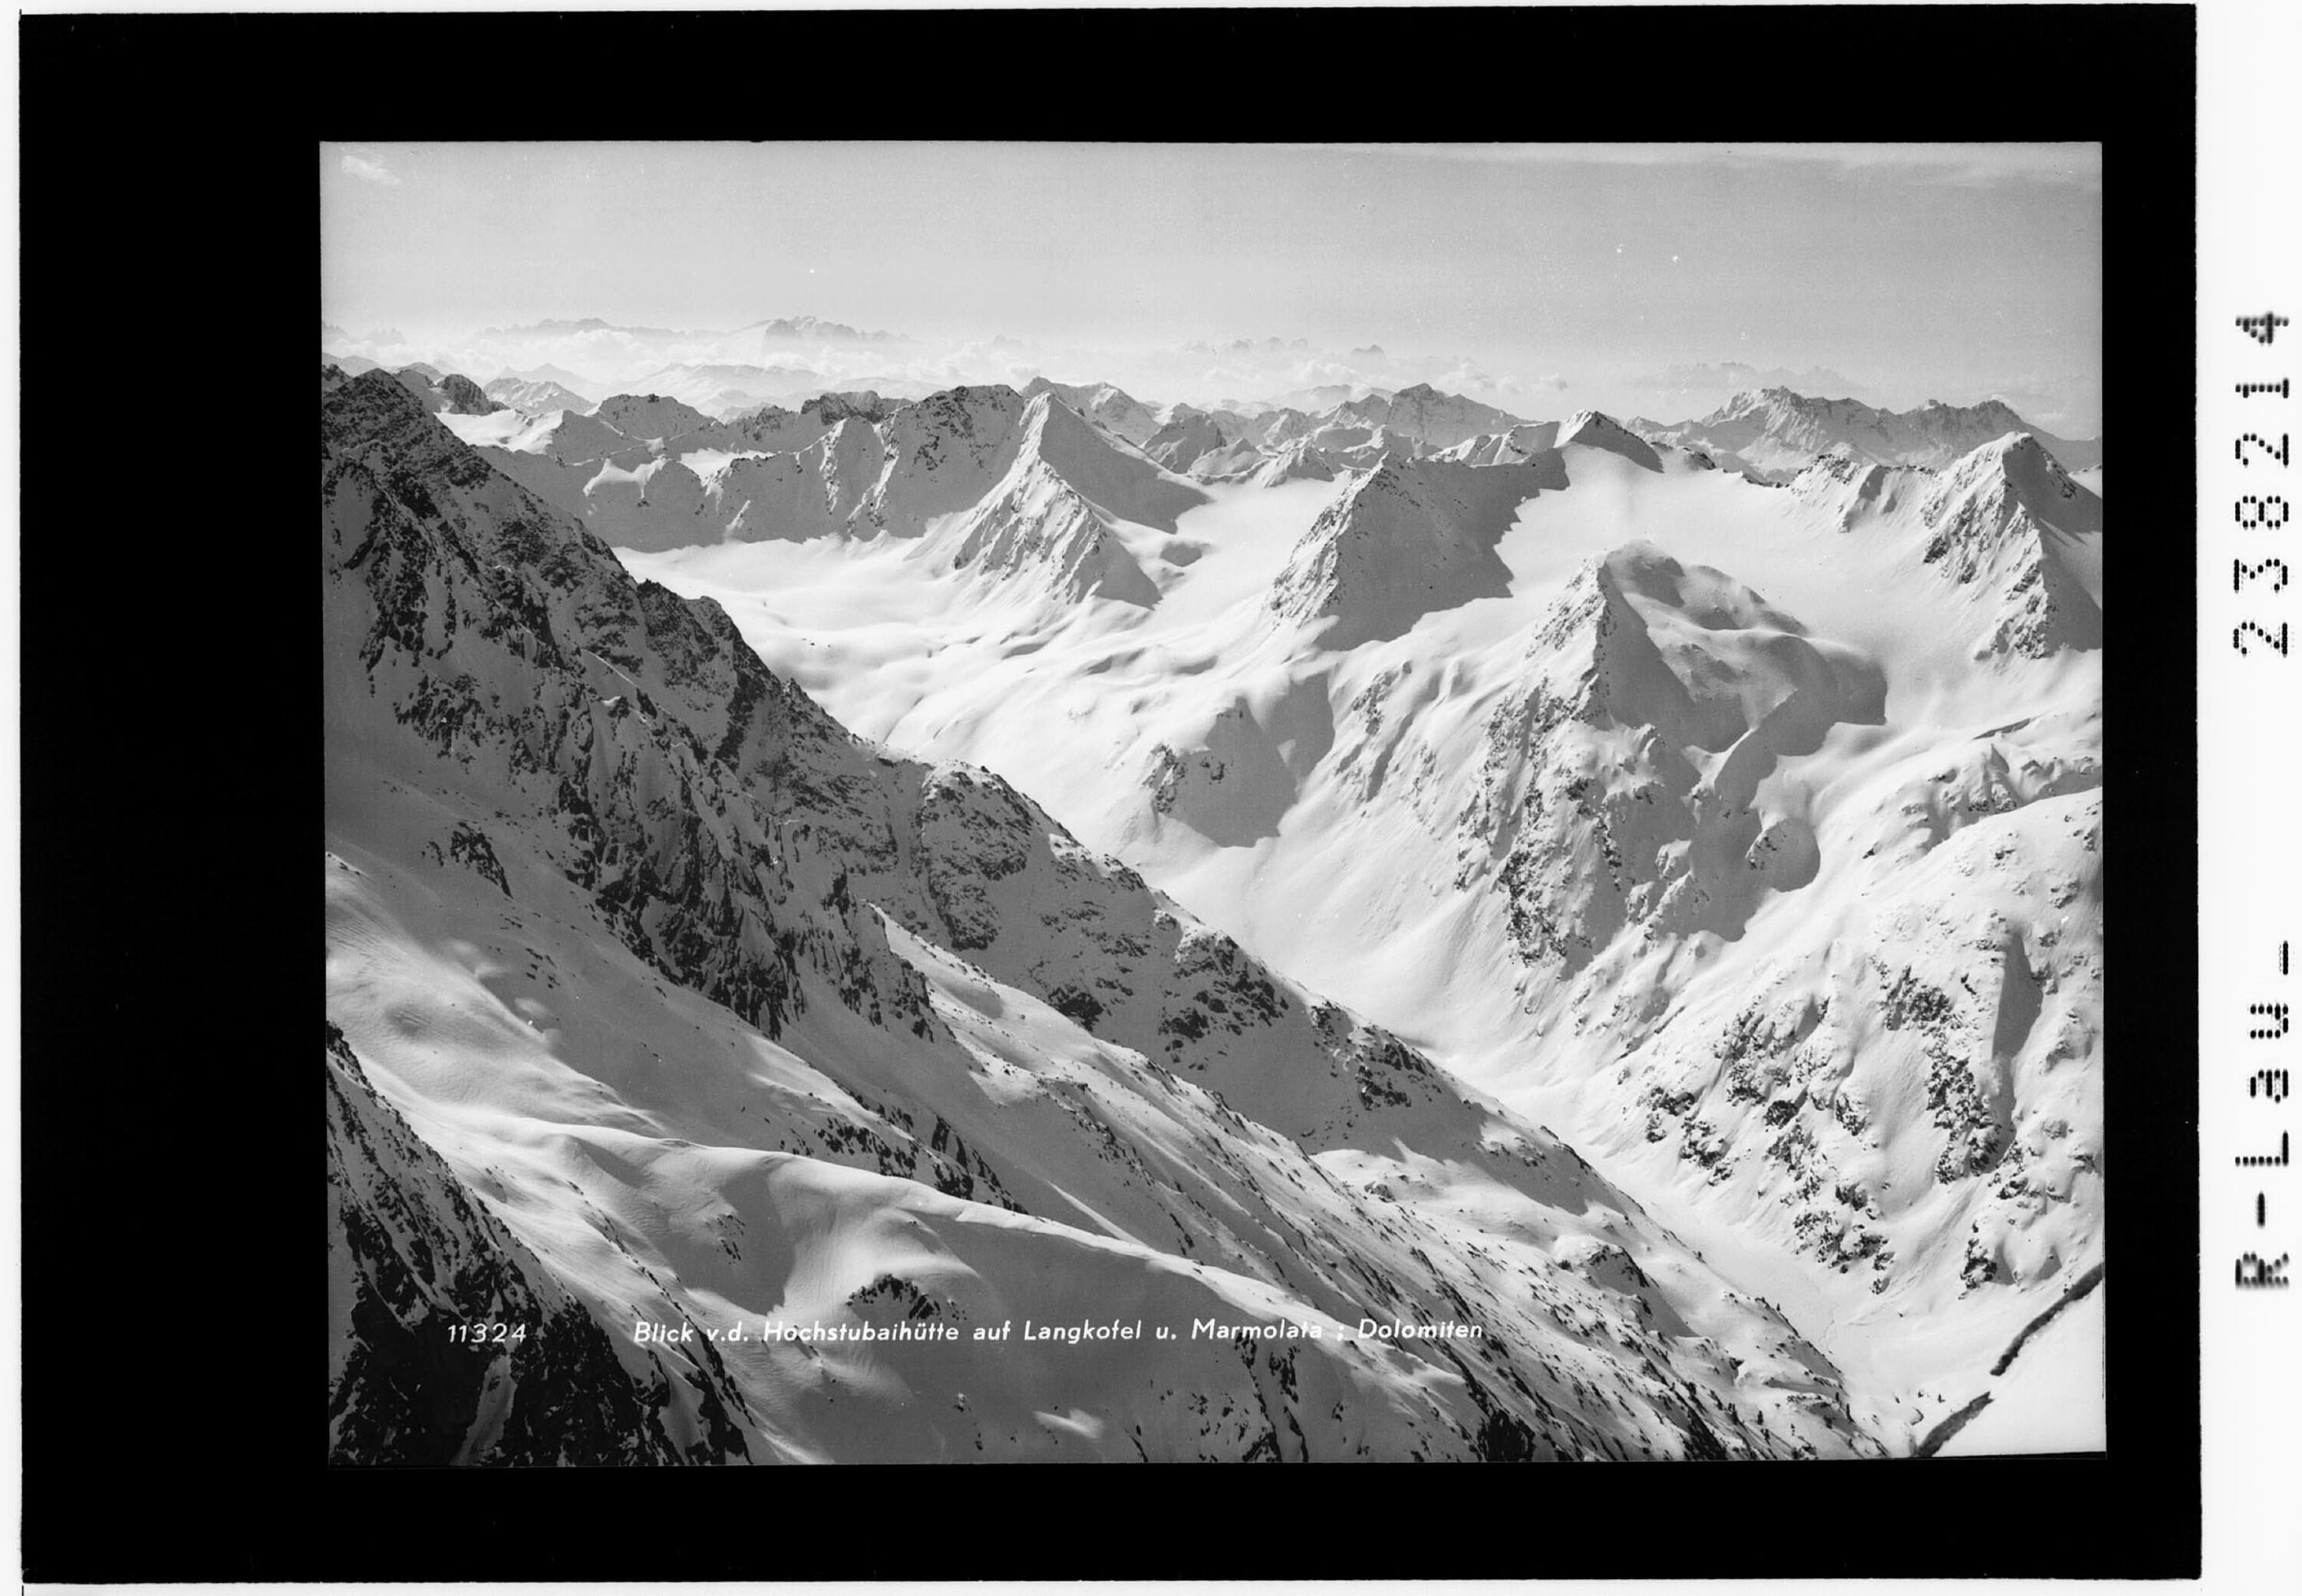 Blick von der Hochstubaihütte auf Langkofel und Marmolata in den Dolomiten></div>


    <hr>
    <div class=